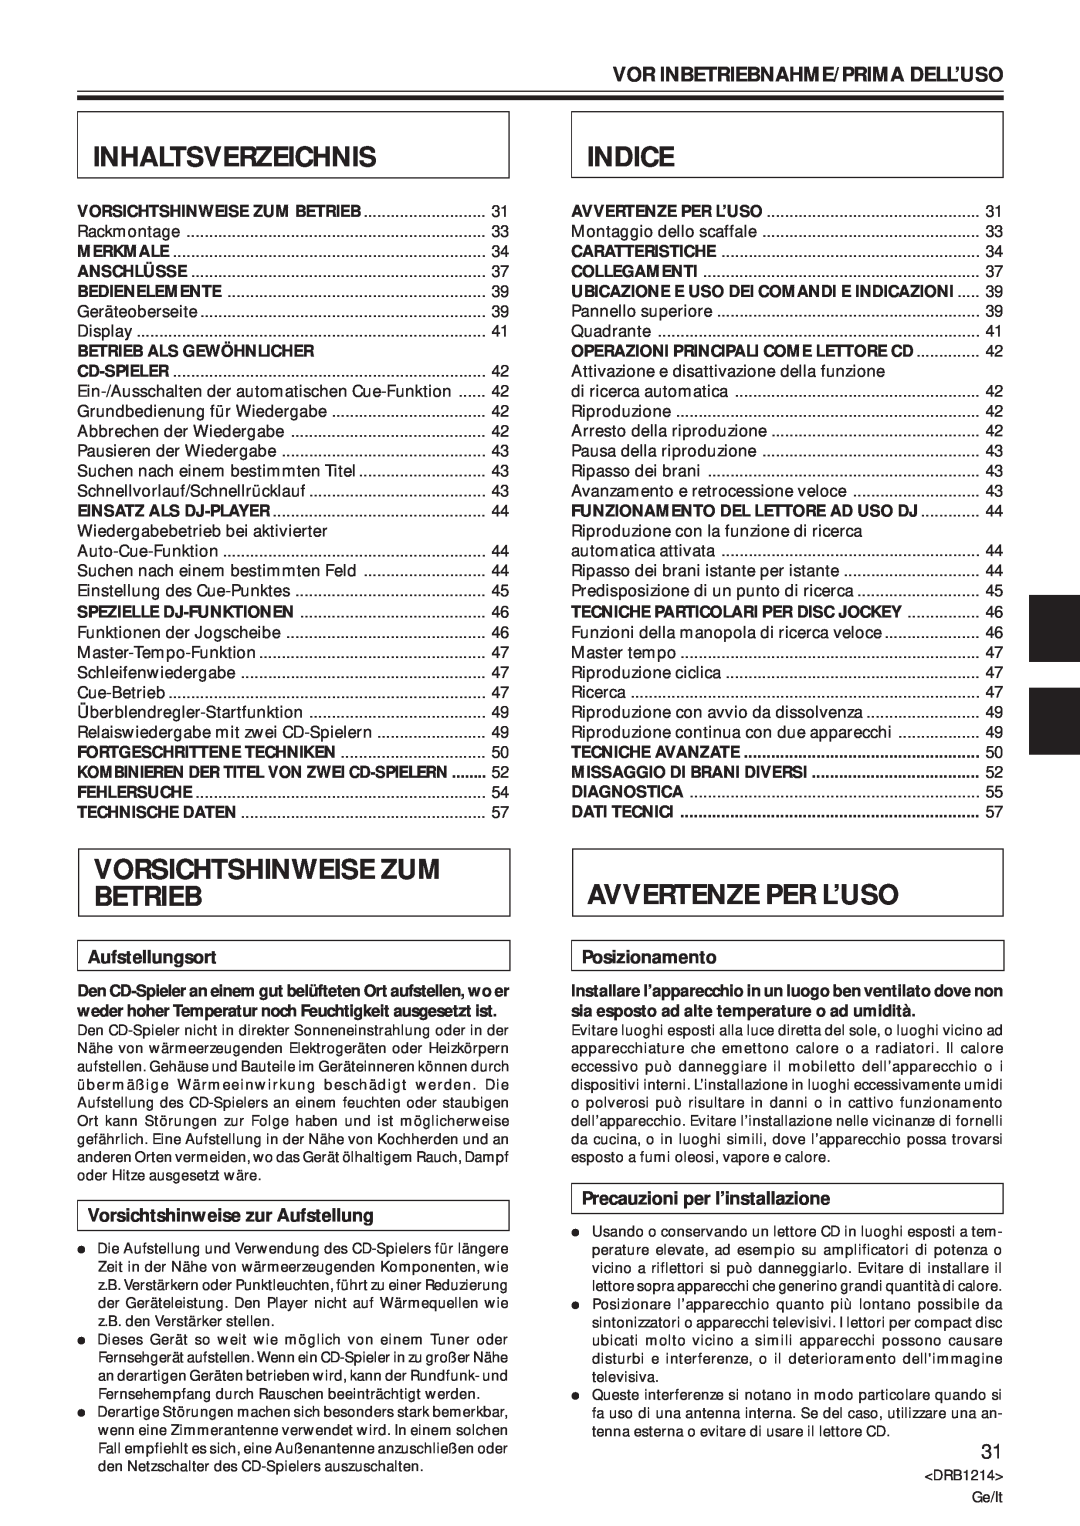 Pioneer CDJ-500S Inhaltsverzeichnis, Indice, Vorsichtshinweise Zum Betrieb, Avvertenze Per L’Uso, Aufstellungsort 